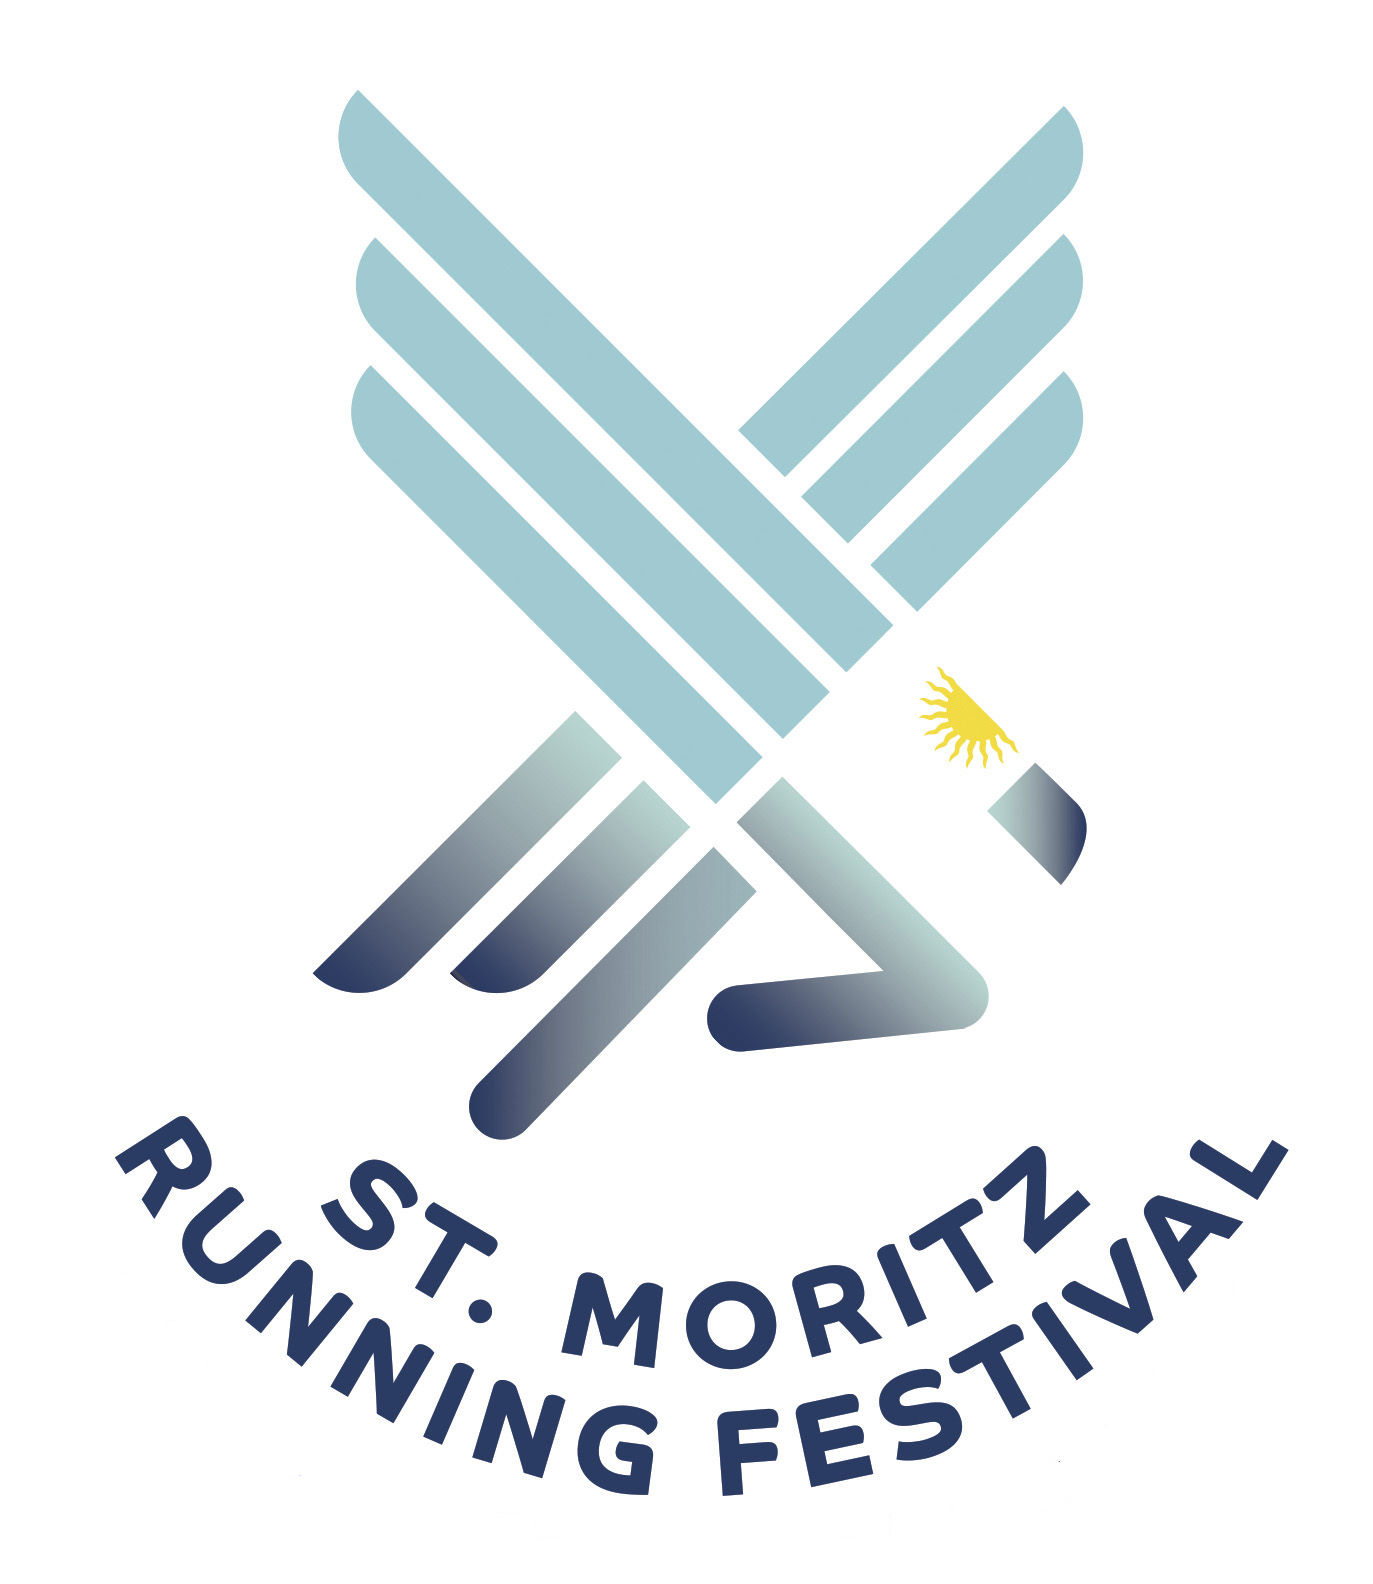 44. St.Moritz Running Festival